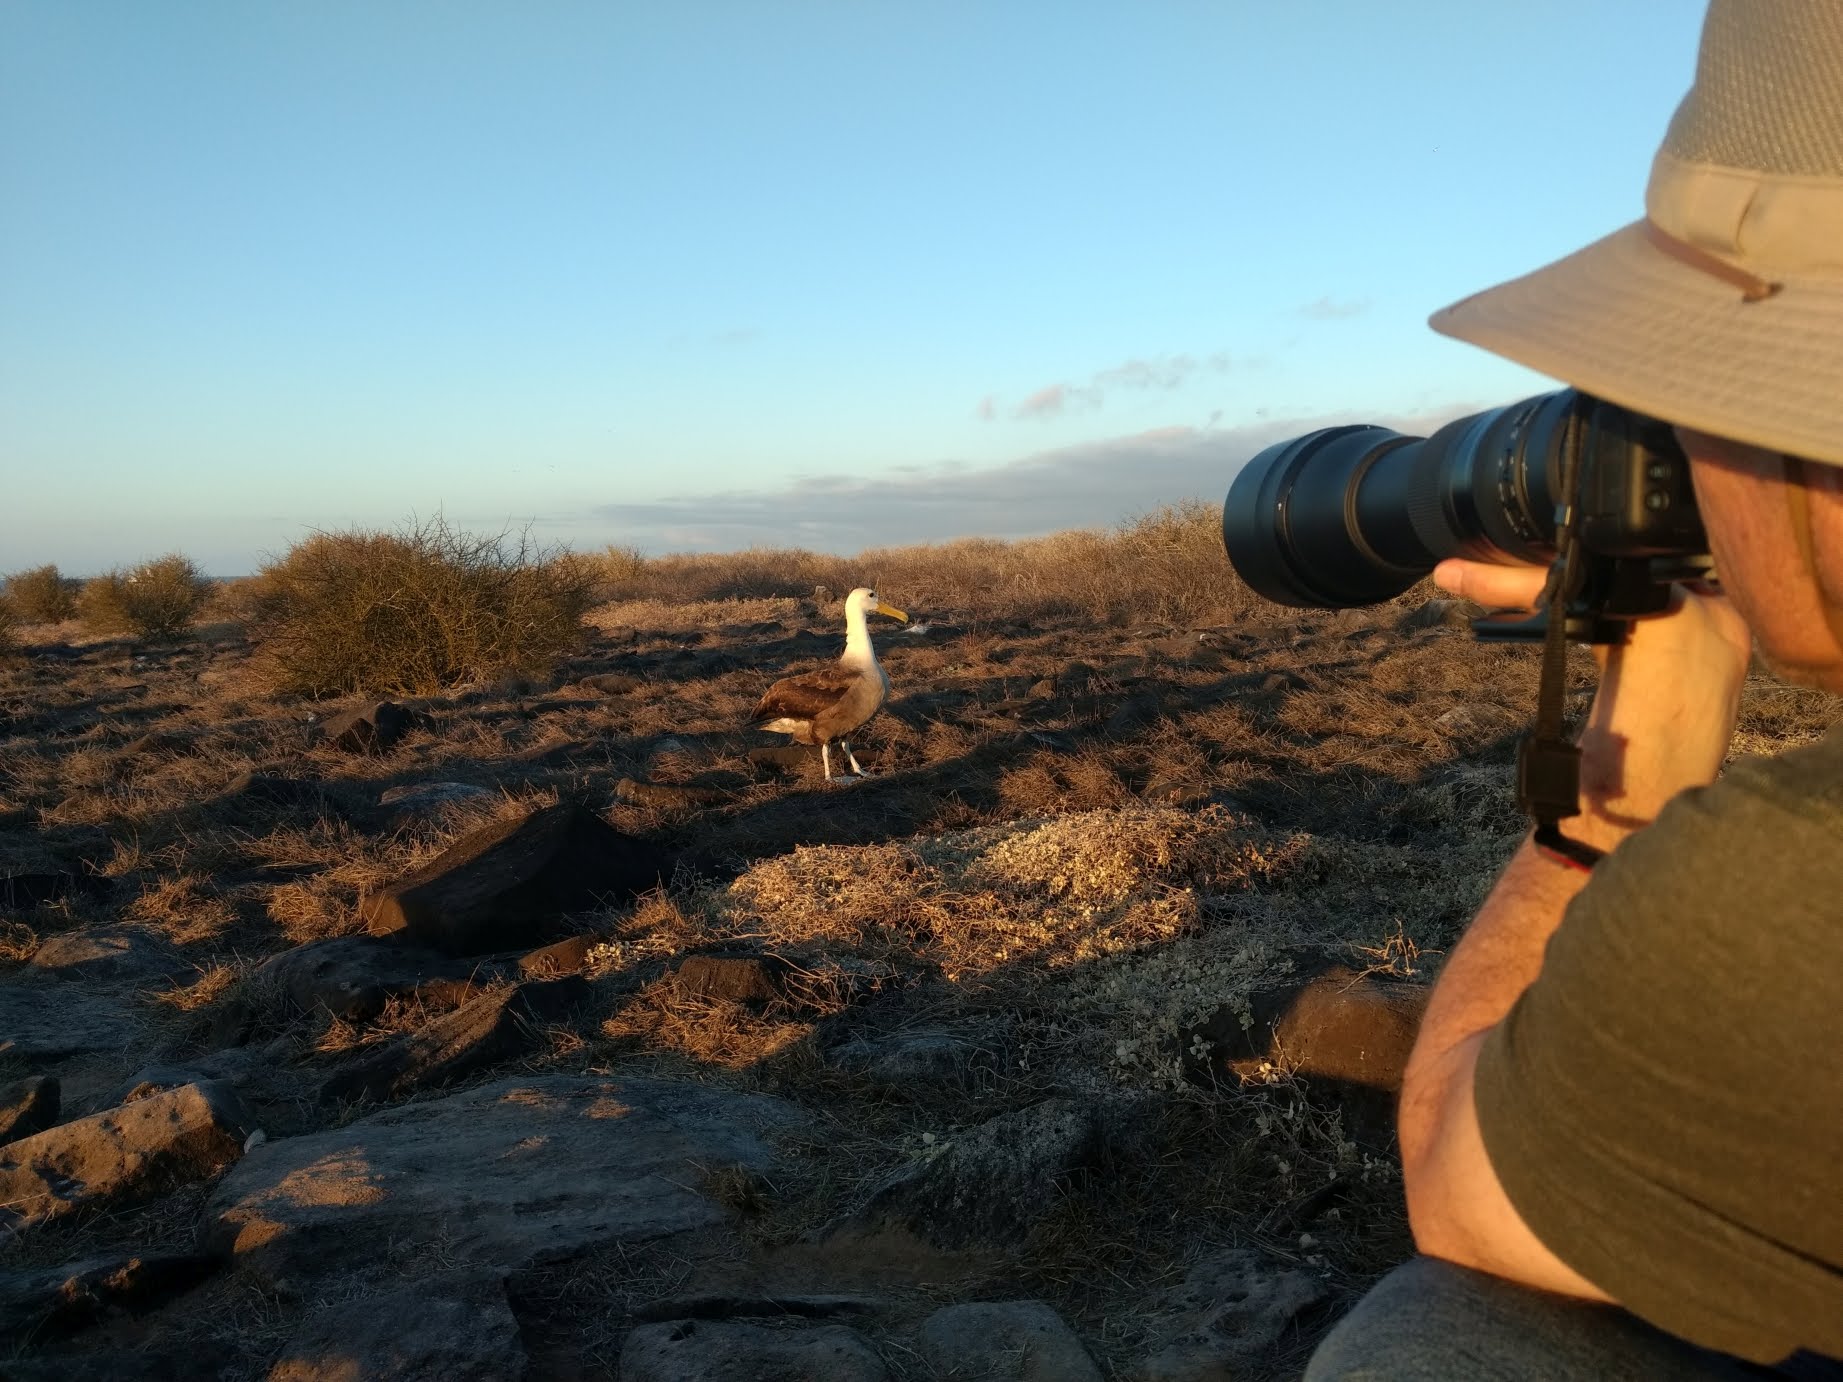 Using a giant camera to photograph an albatross a few feet away.